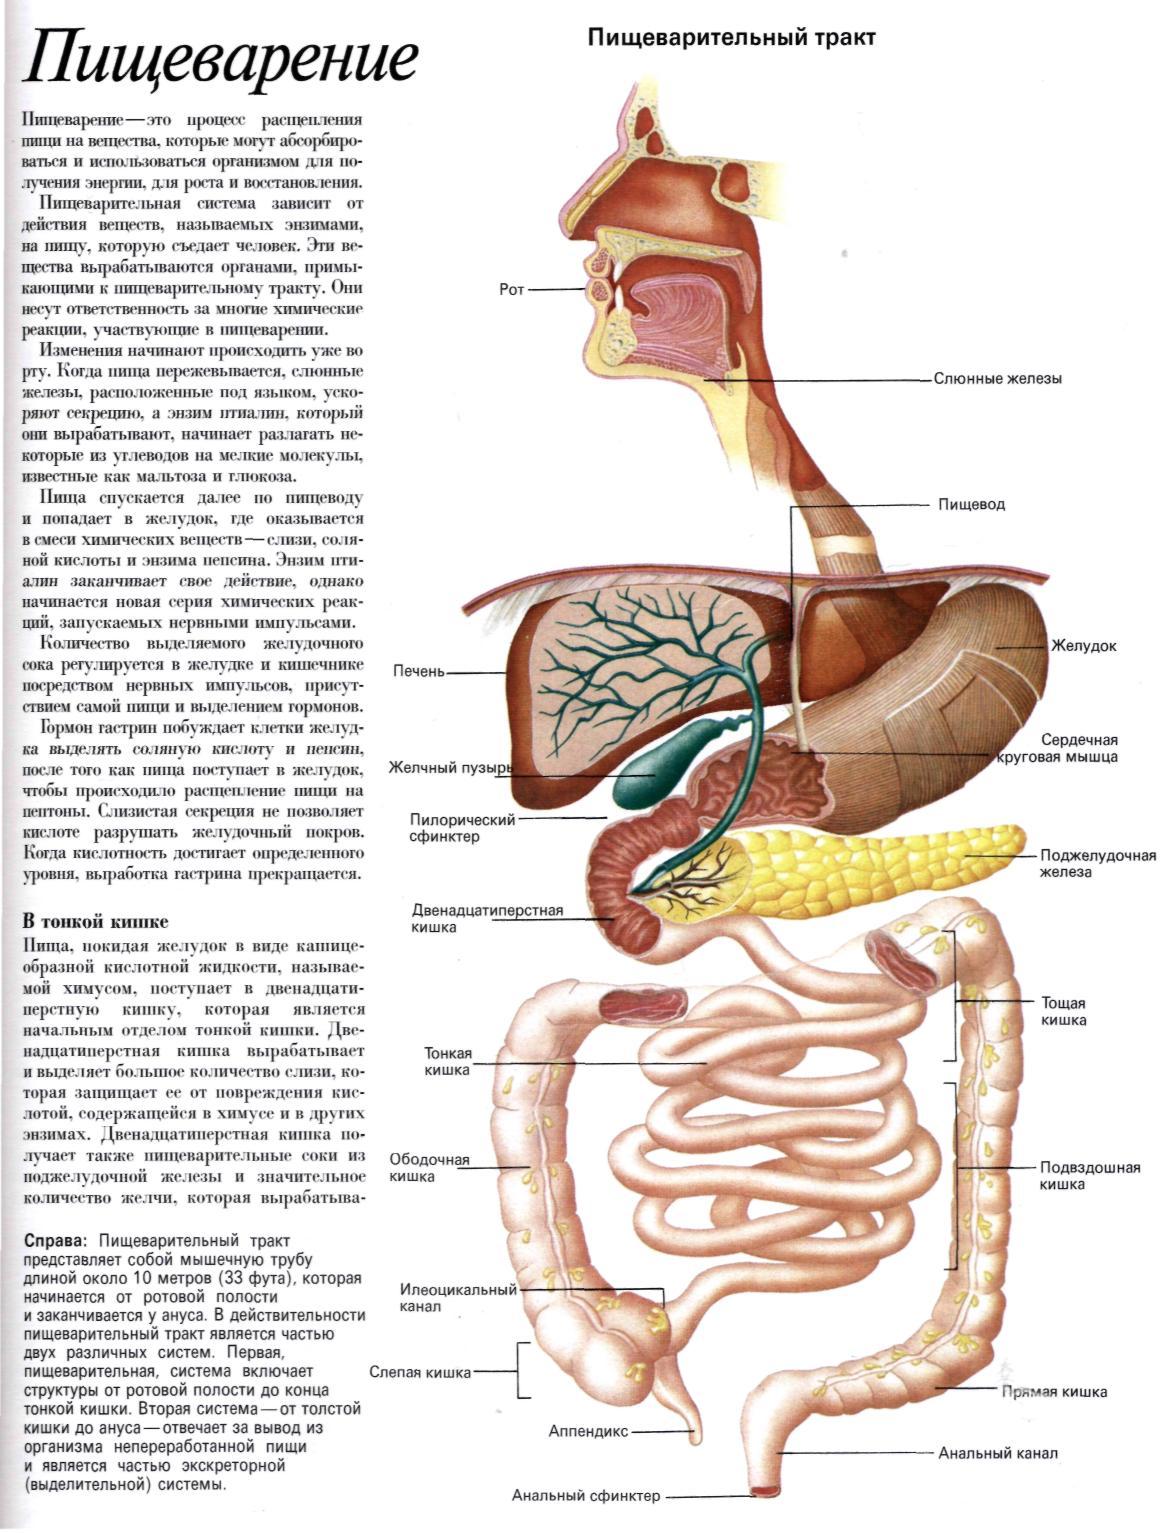 Кишечный отдел человека. Пищеварительная система атлас анатомии. Анатомия пищеварительной системы человека атлас. Строение органов пищеварительного тракта. Анатомический атлас человека пищеварительная система человека схема.